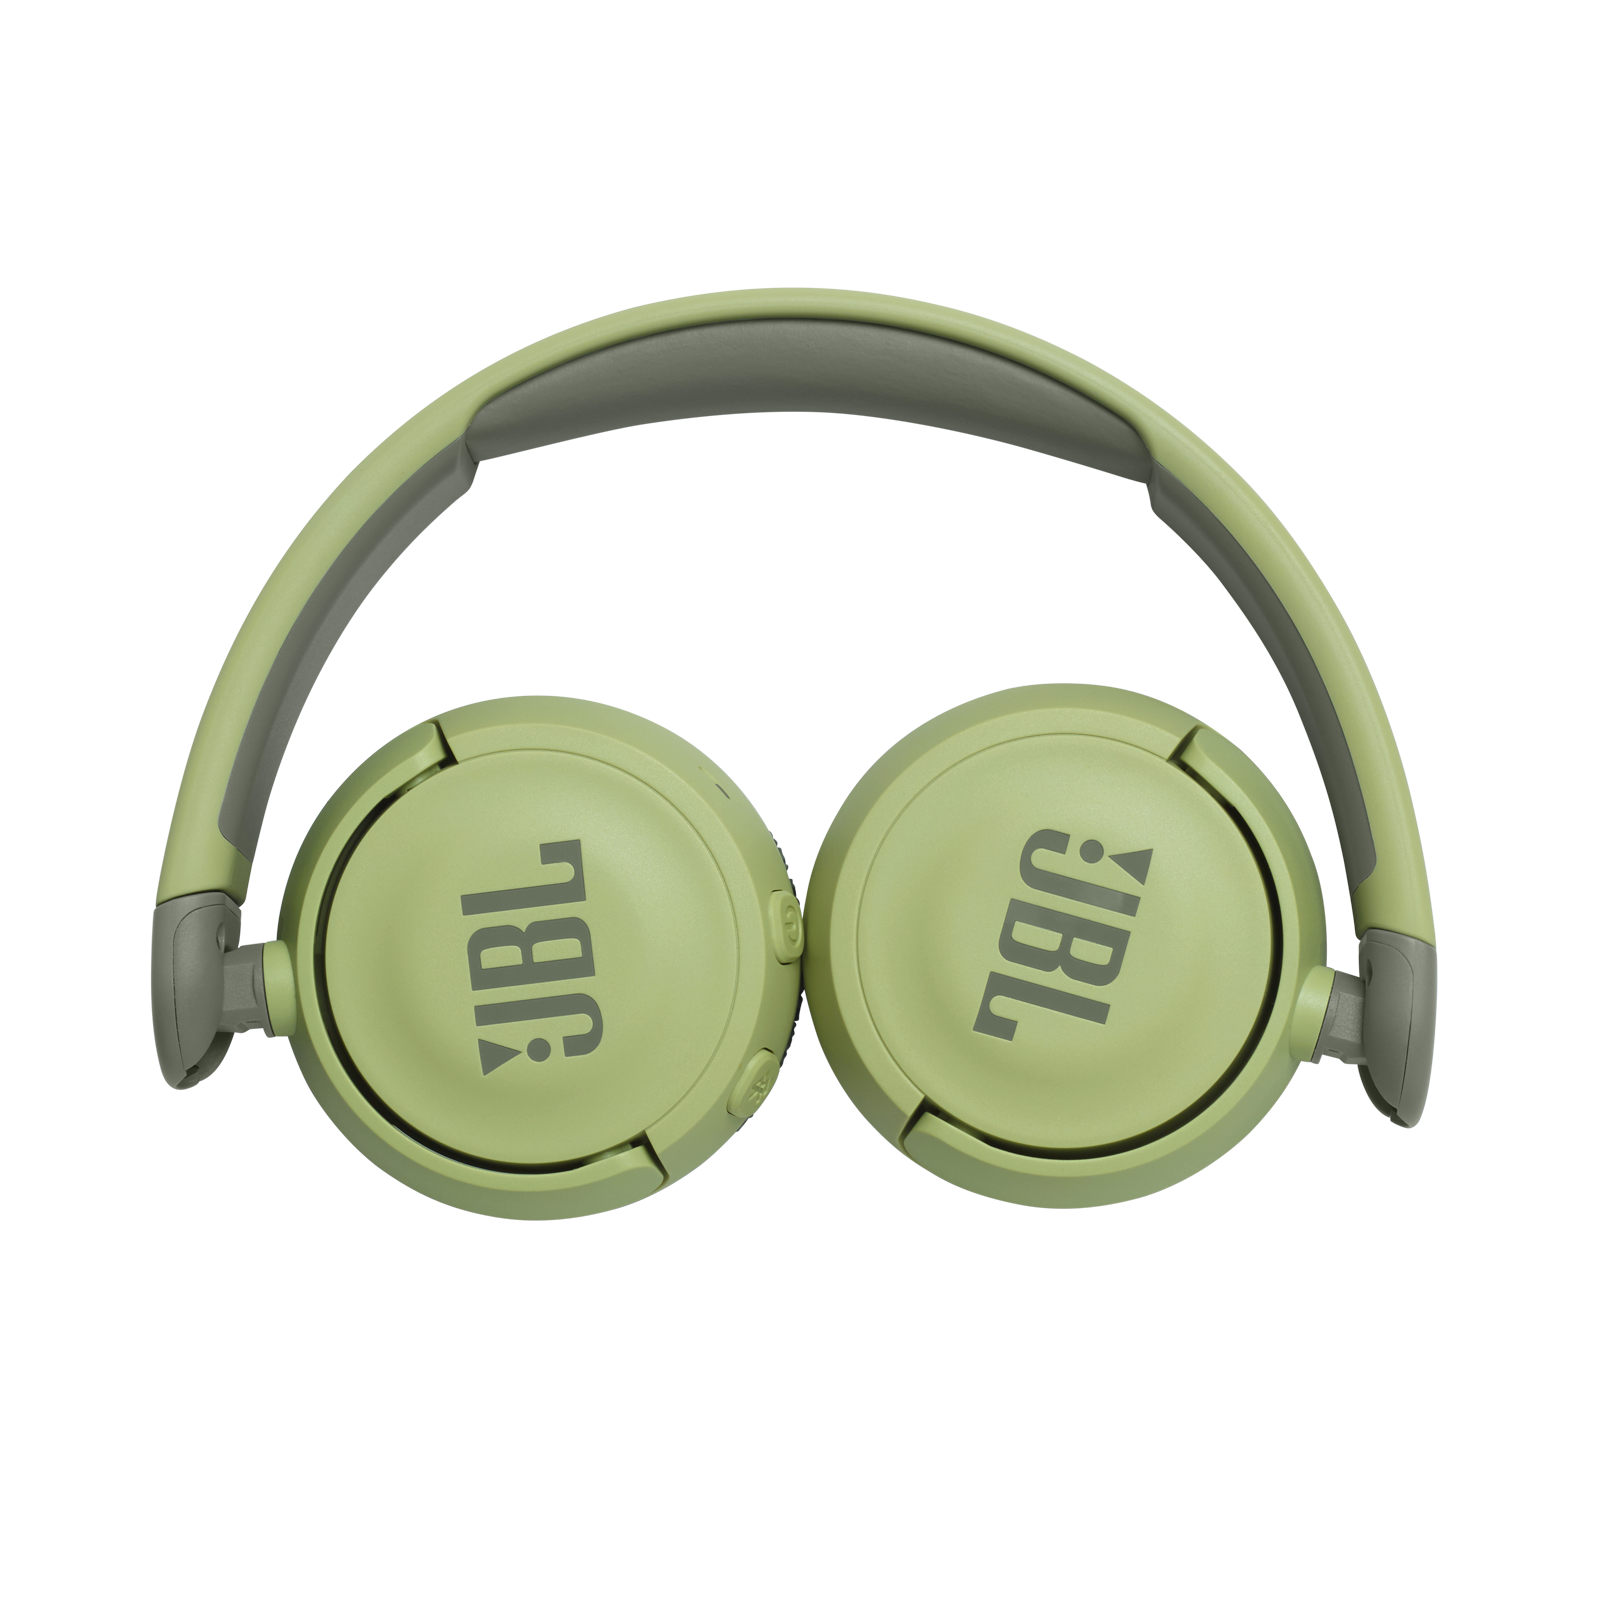 JBL Jr310BT - Green - Kids Wireless on-ear headphones - Detailshot 2